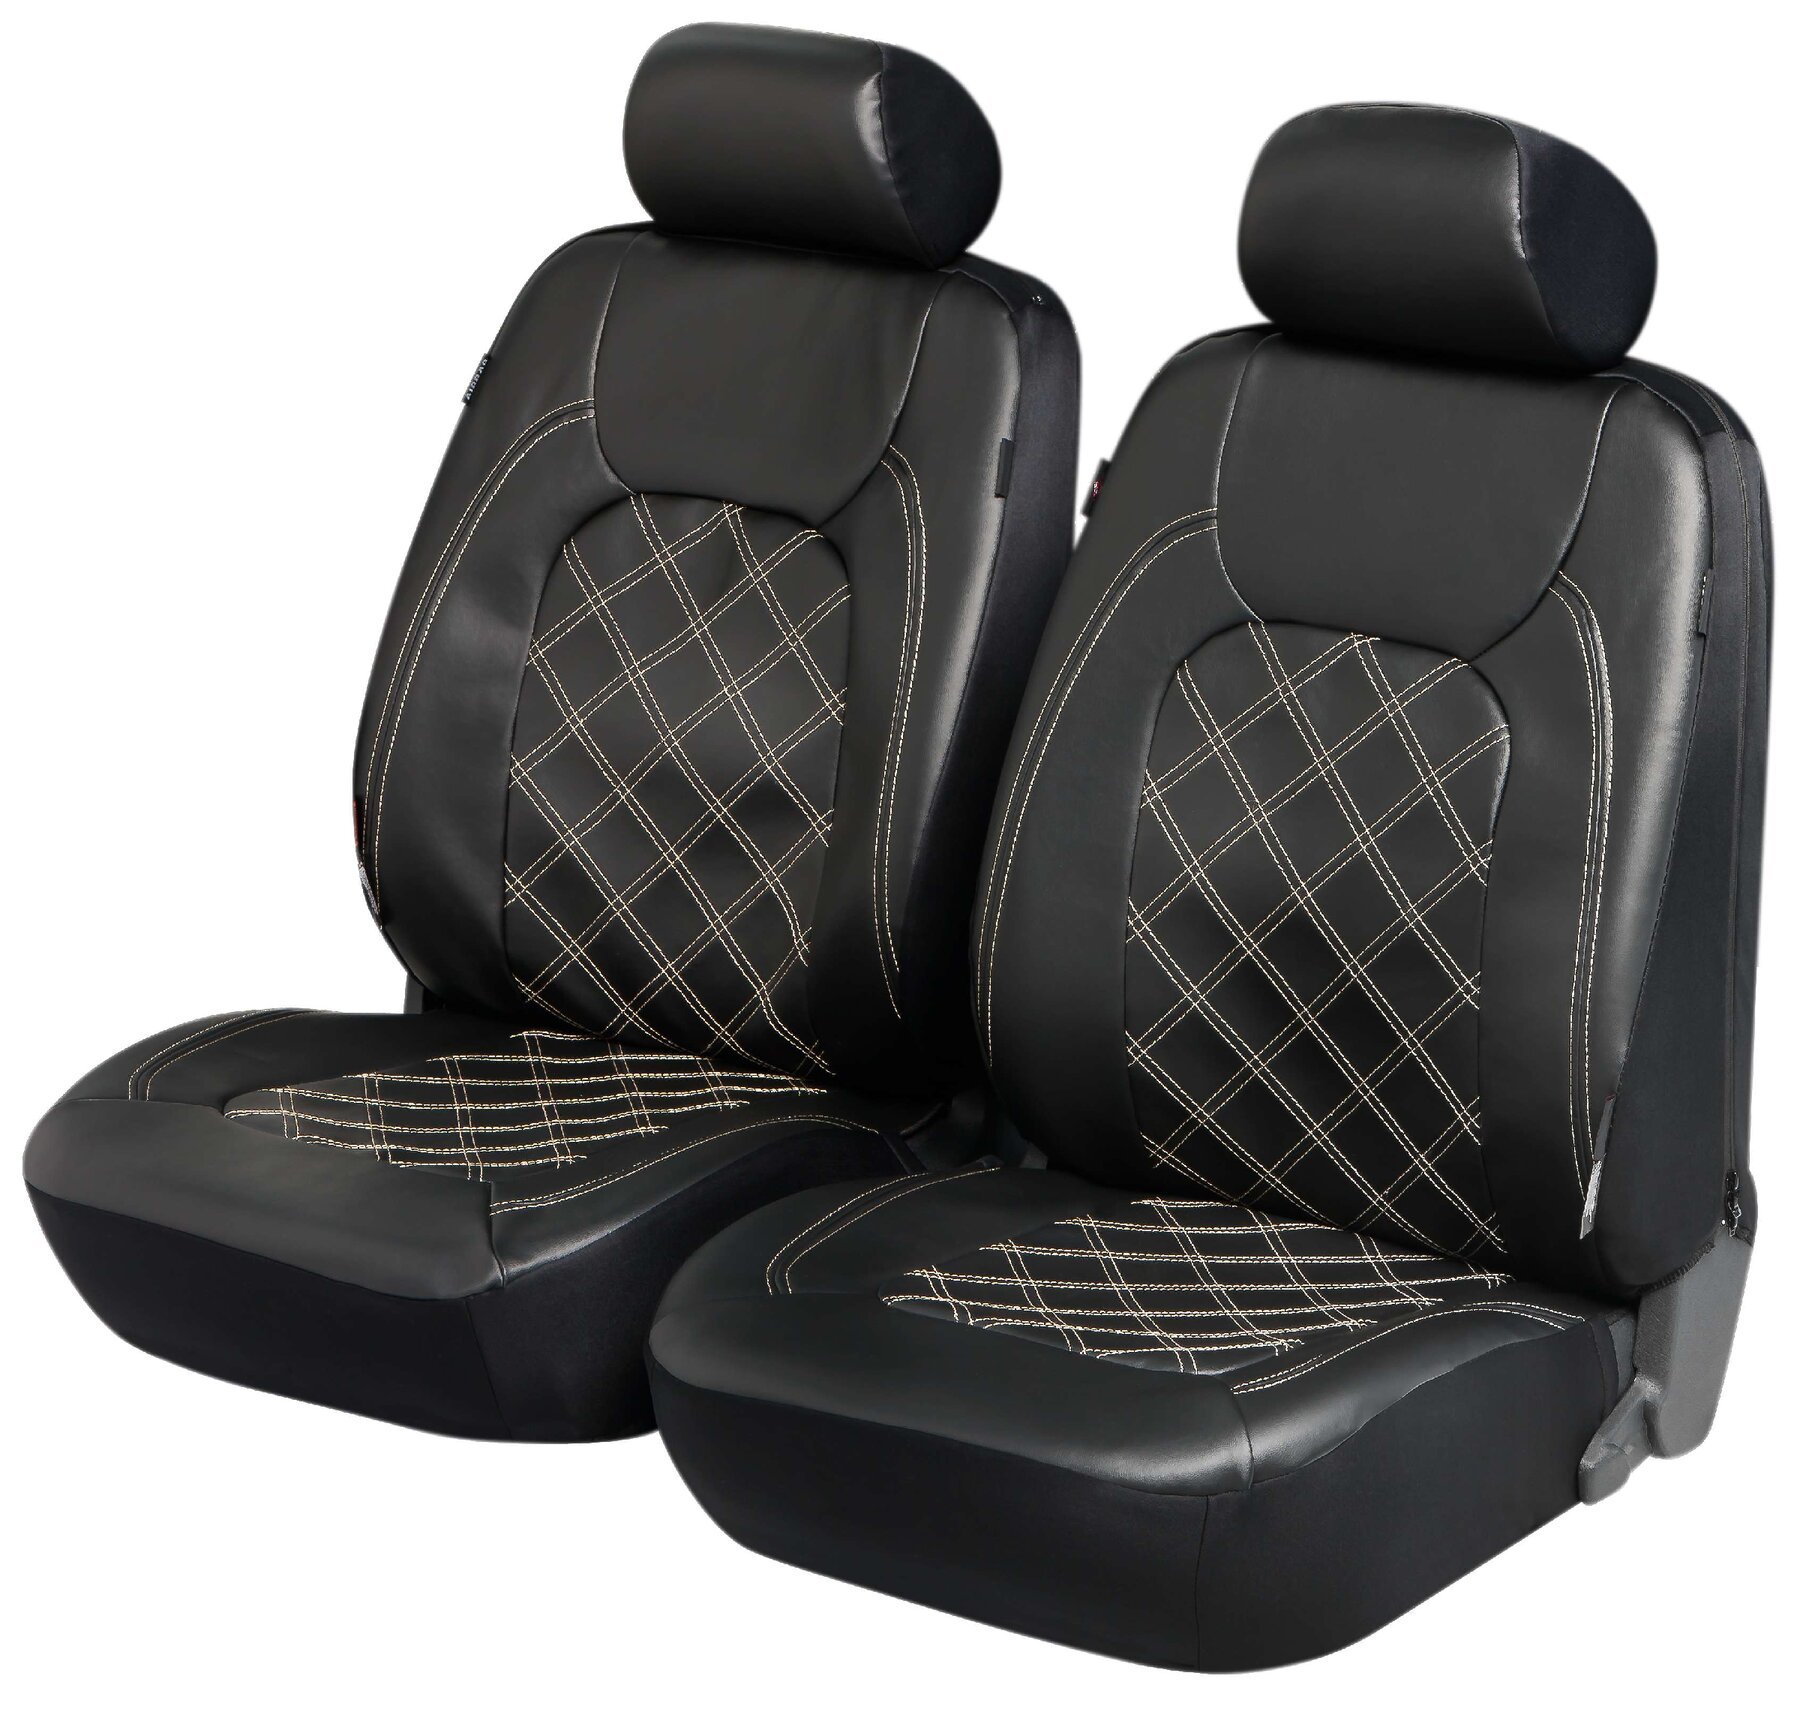 Deluxe Auto stoelbeschermer Paddington met Zipper ZIPP-IT Autostoelhoes, 2 stoelbeschermer voor voorstoel Kunstleer zwart 11978